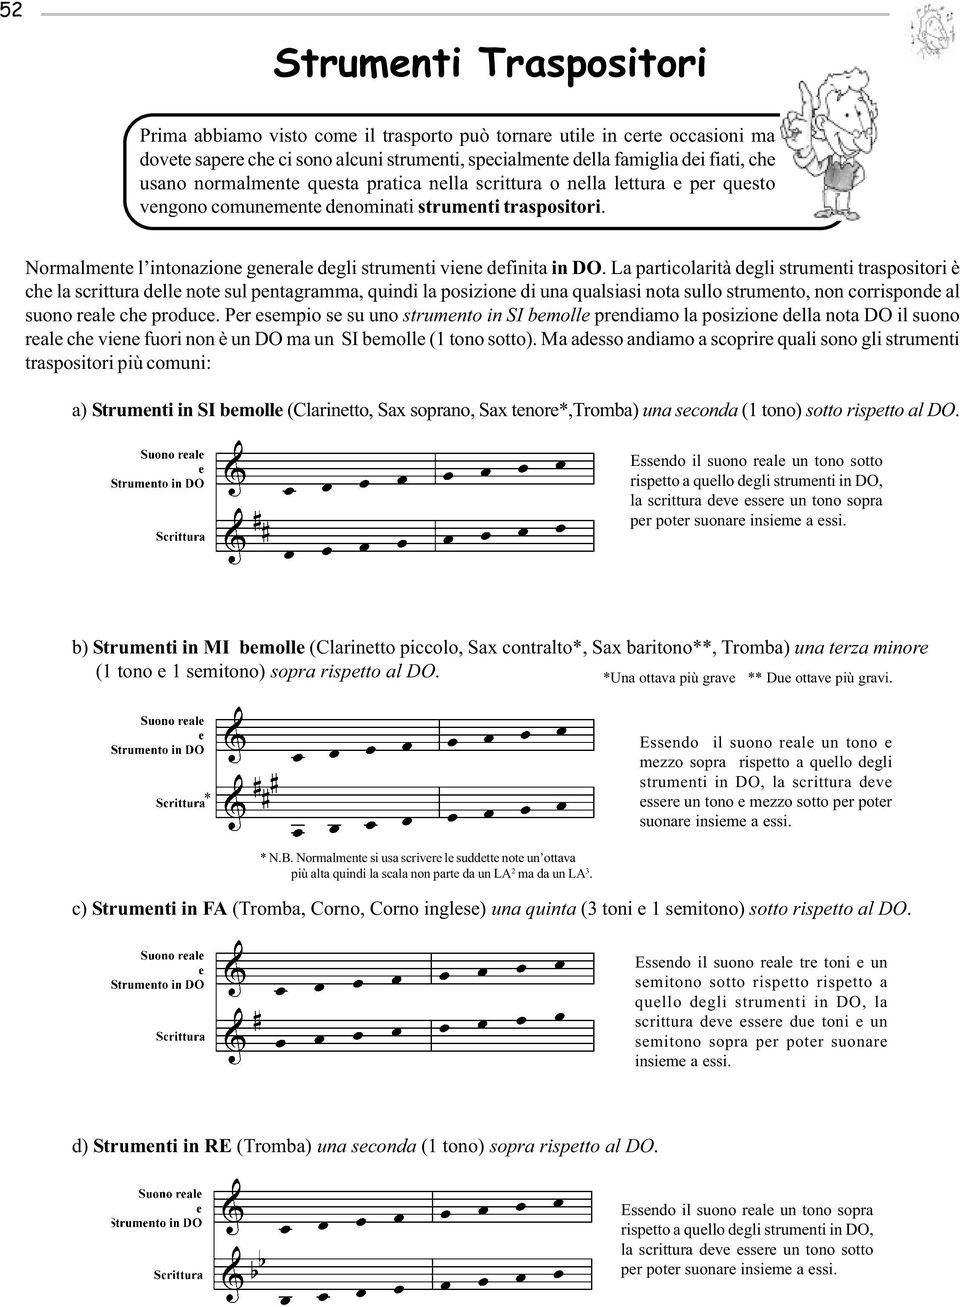 La particolarità degli strumenti traspositori è che la scrittura delle note sul pentagramma, quindi la posizione di una qualsiasi nota sullo strumento, non corrisponde al suono reale che produce.